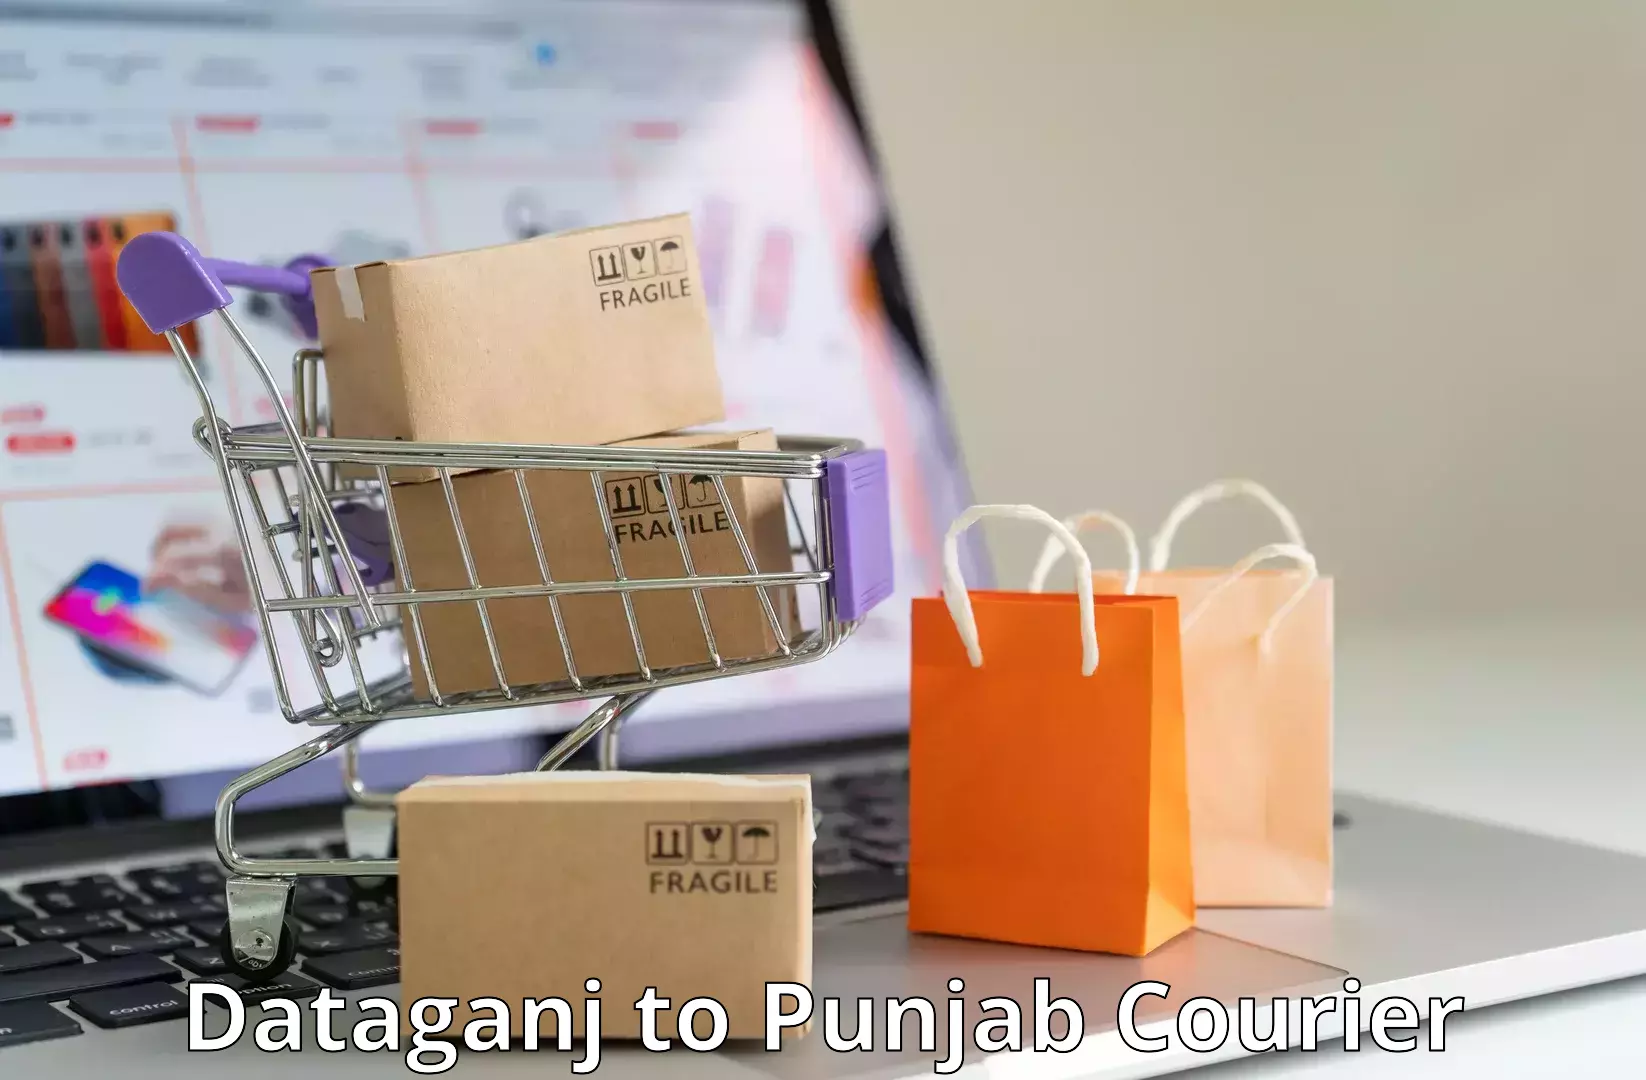 Package tracking Dataganj to Punjab